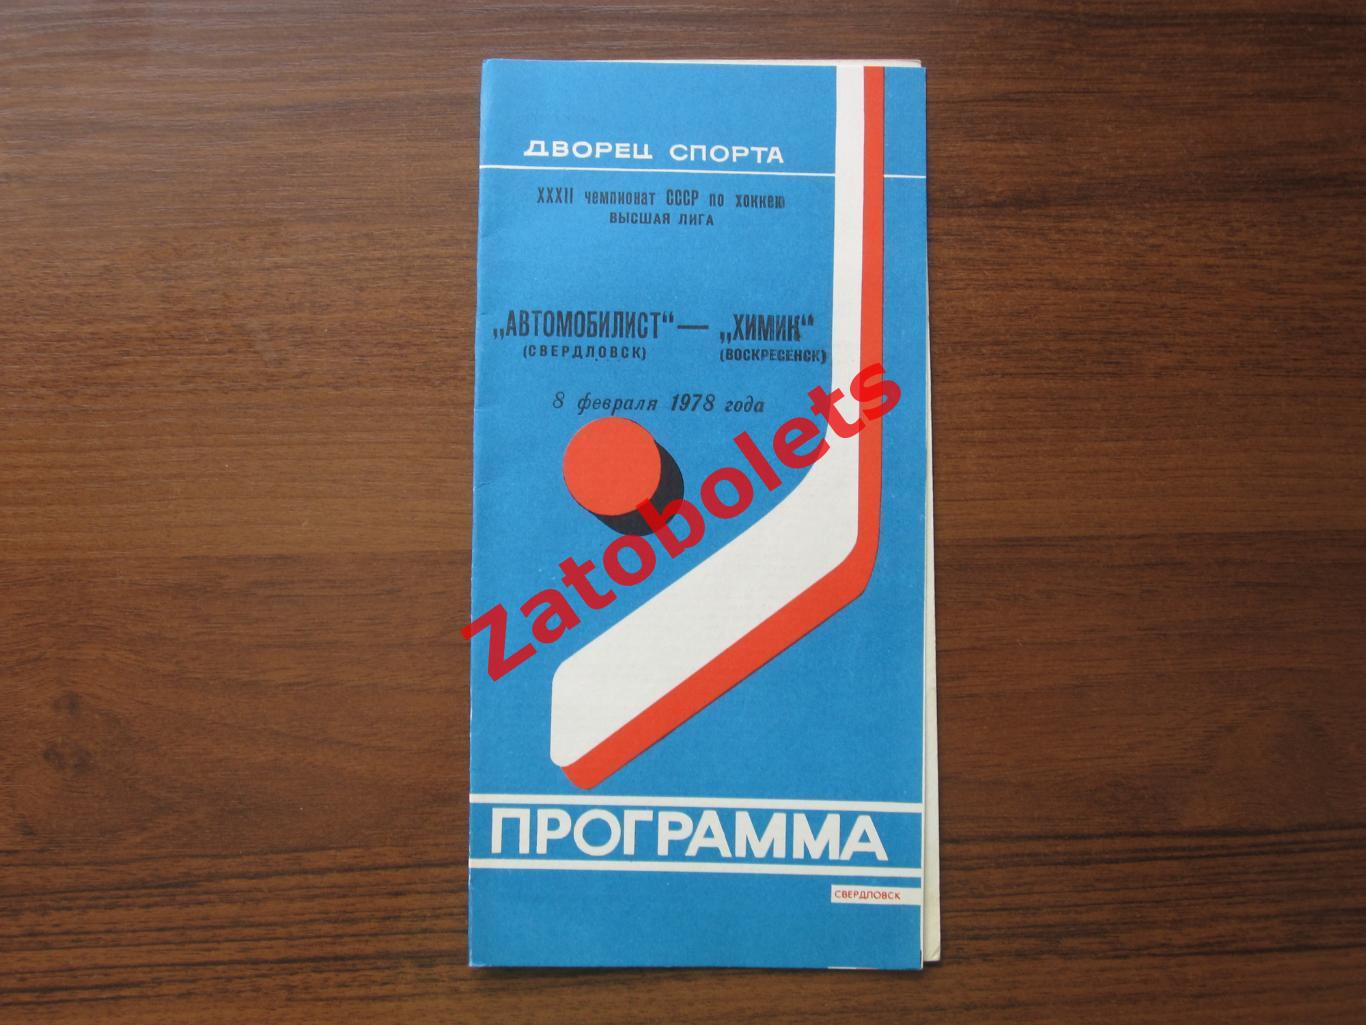 Автомобилист Свердловск - Химик Воскресенск 1978 08.02